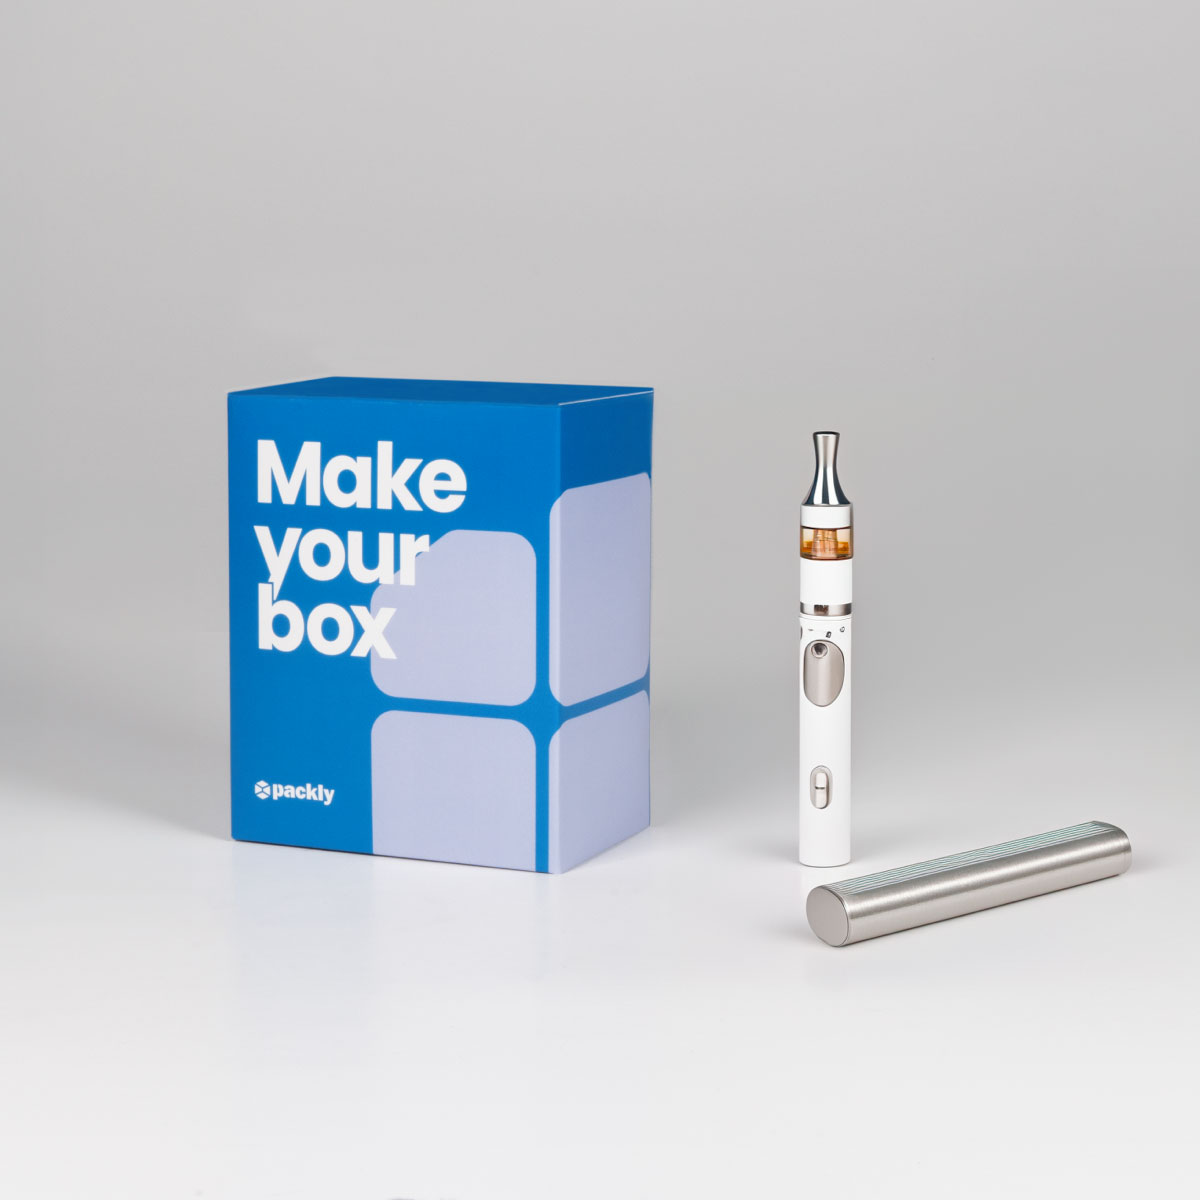 E-Cigarette packaging